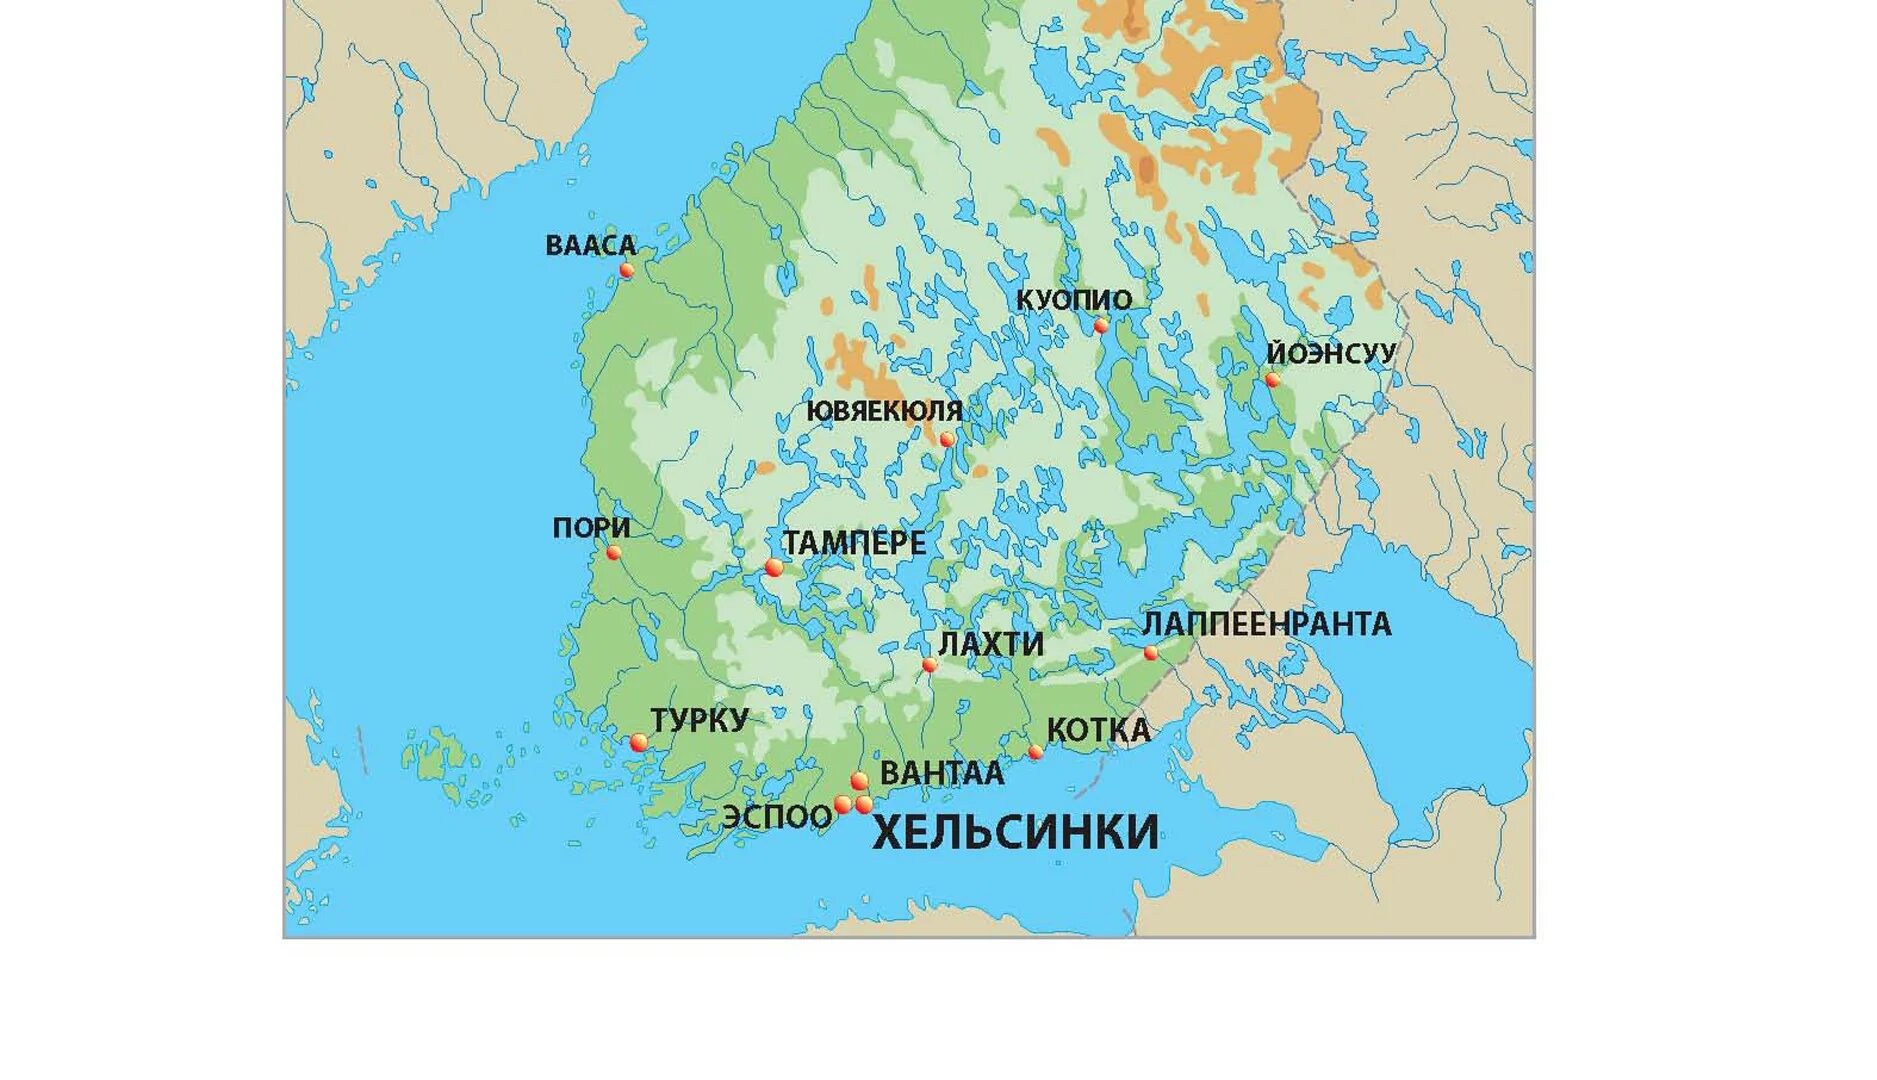 Карта финляндии канал. Где находится Финляндия на карте. Турку город в Финляндии на карте. Хельсинки на карте Финляндии.